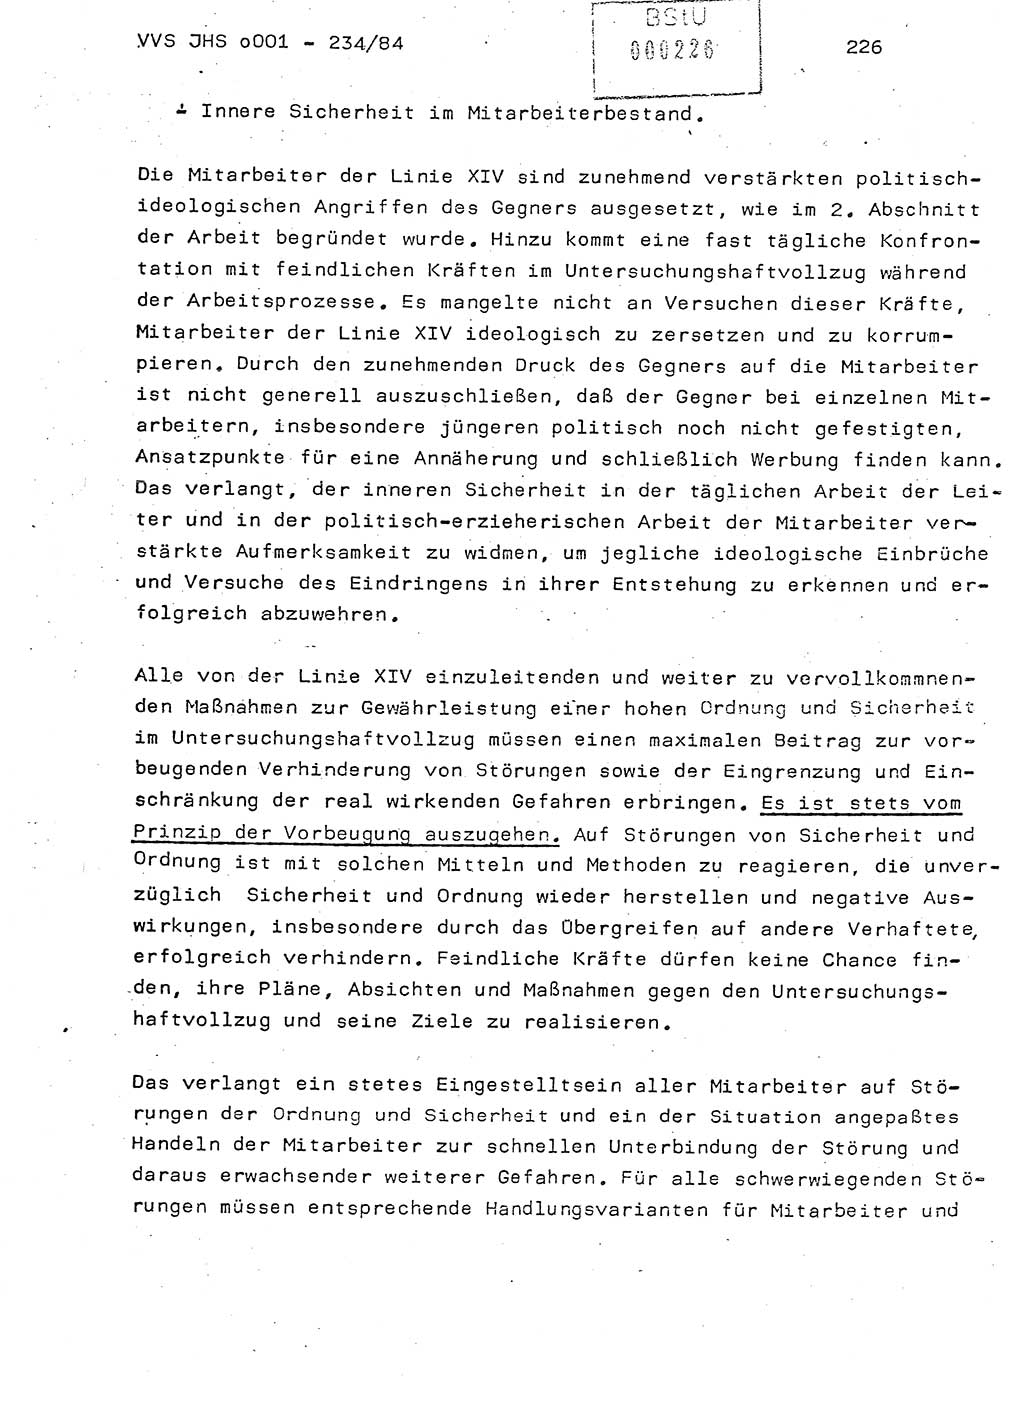 Dissertation Oberst Siegfried Rataizick (Abt. ⅩⅣ), Oberstleutnant Volkmar Heinz (Abt. ⅩⅣ), Oberstleutnant Werner Stein (HA Ⅸ), Hauptmann Heinz Conrad (JHS), Ministerium für Staatssicherheit (MfS) [Deutsche Demokratische Republik (DDR)], Juristische Hochschule (JHS), Vertrauliche Verschlußsache (VVS) o001-234/84, Potsdam 1984, Seite 226 (Diss. MfS DDR JHS VVS o001-234/84 1984, S. 226)